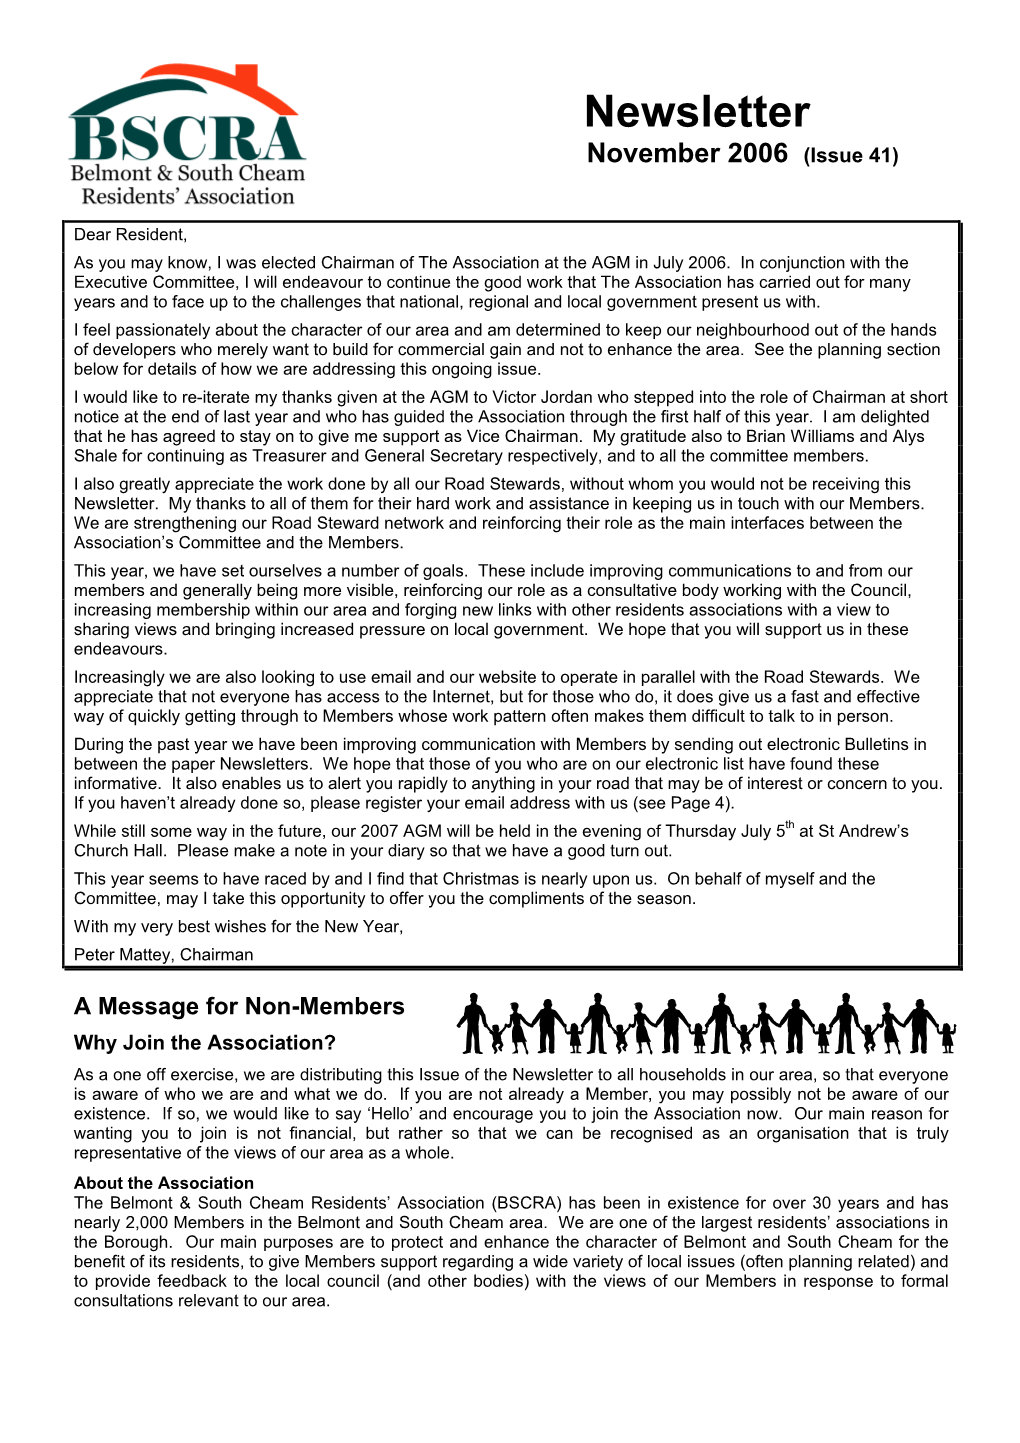 Newsletter November 2006 (Issue 41)